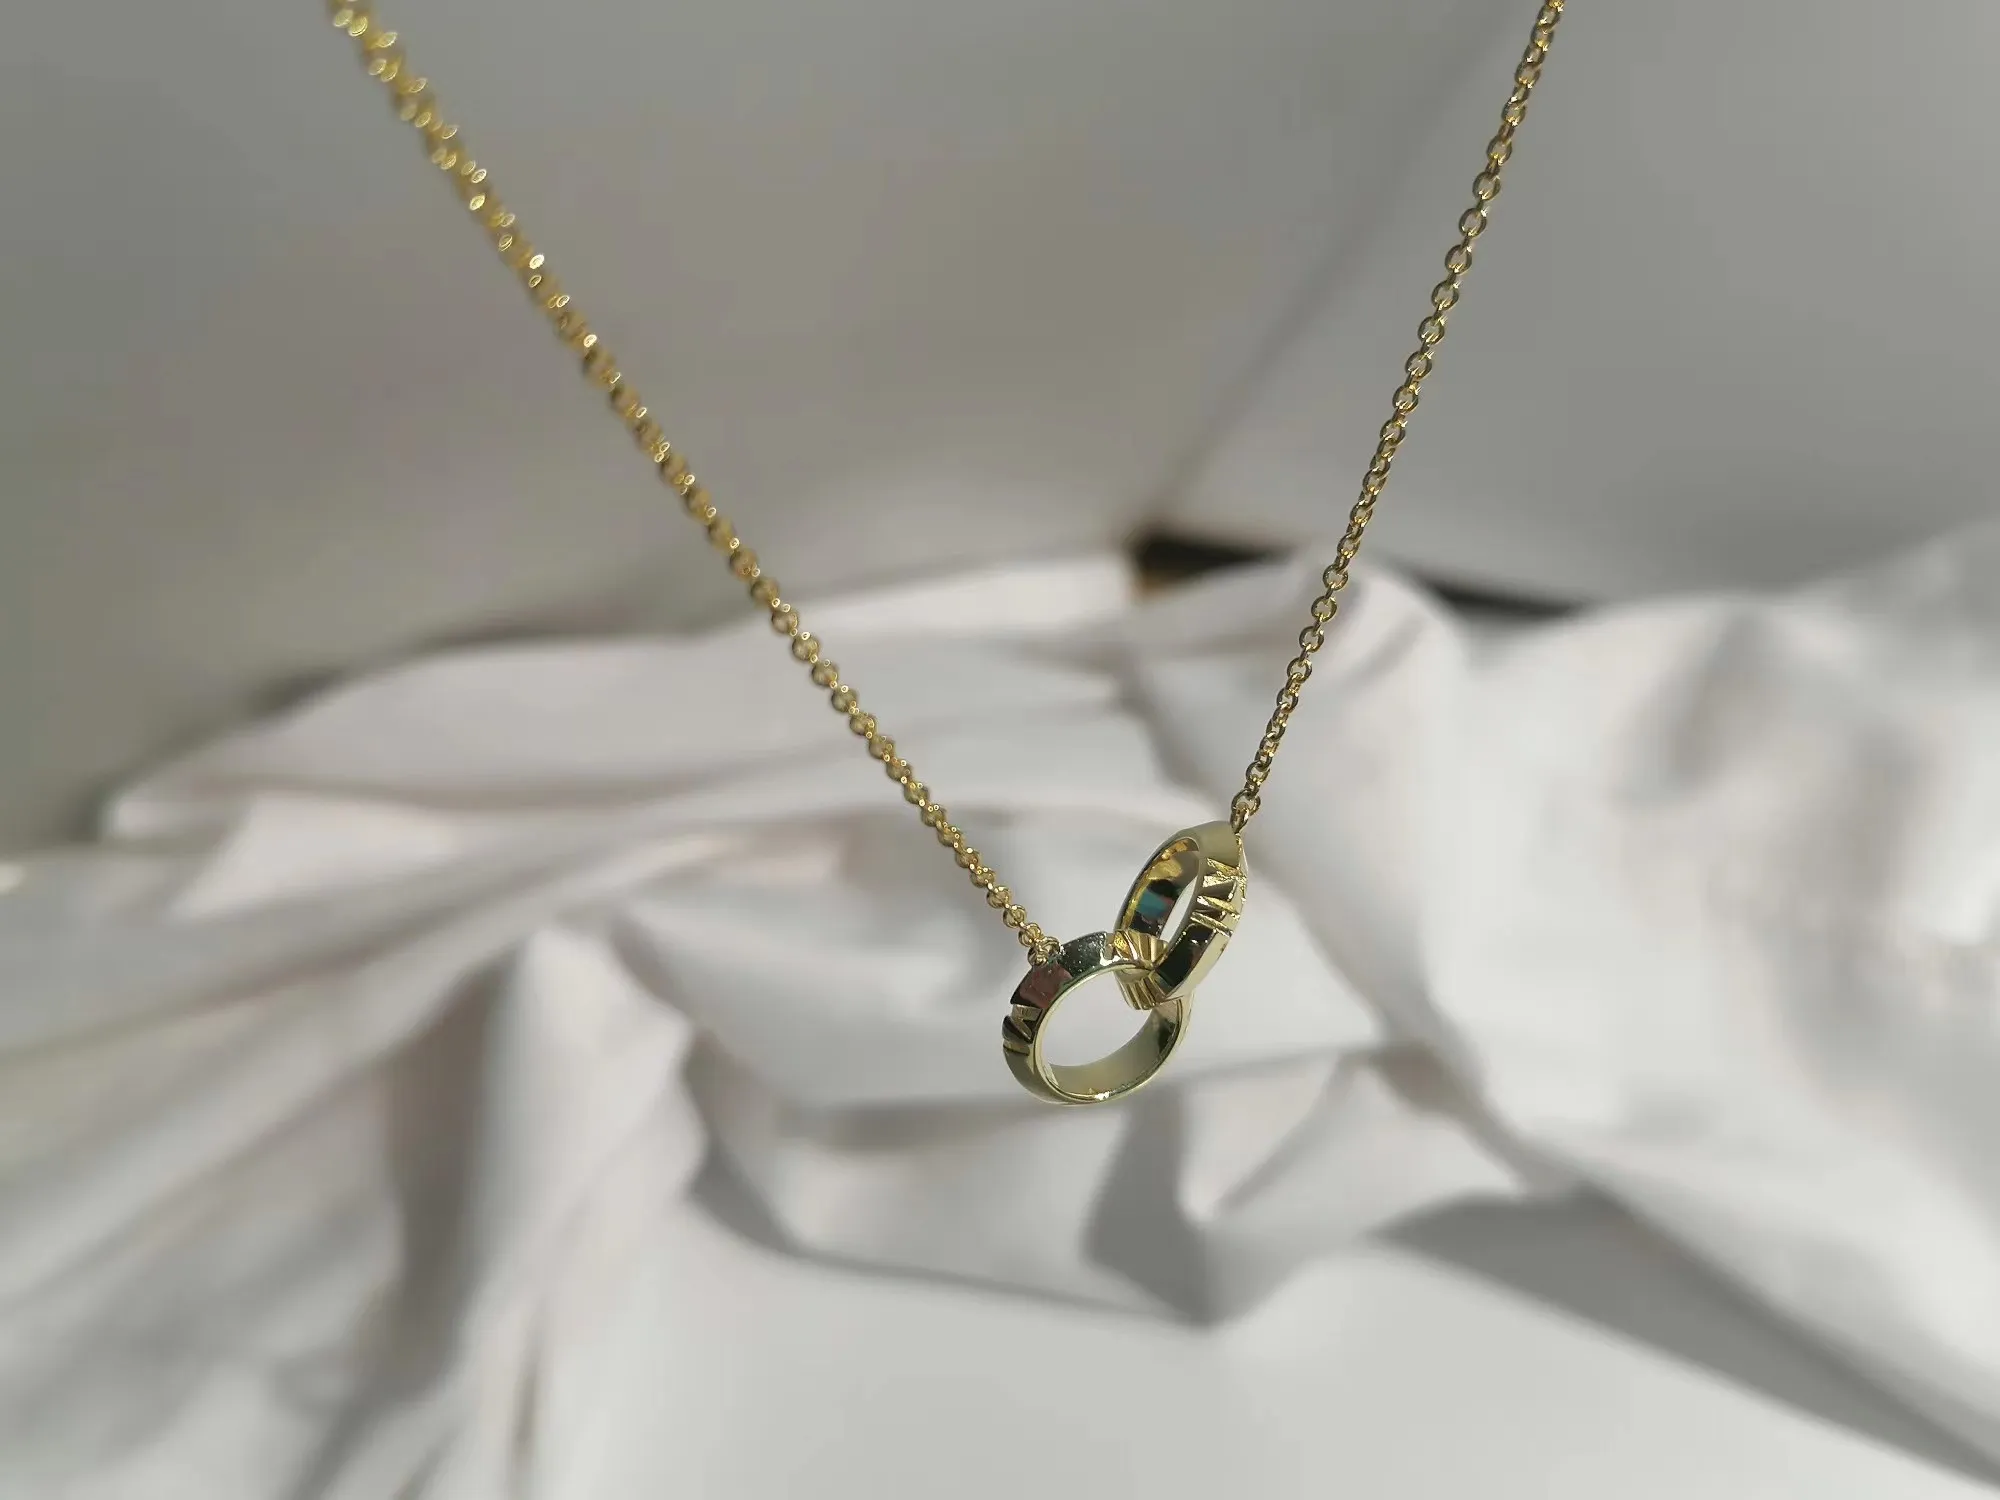 هارت مجوهرات الفضة الذهب سلسلة مع قلادة التنس قلادة الماس وضعت متداخلة 18K المعلقات مصممة للأجهزة للزوجين زوجين الأزياء هدية حفل زفاف